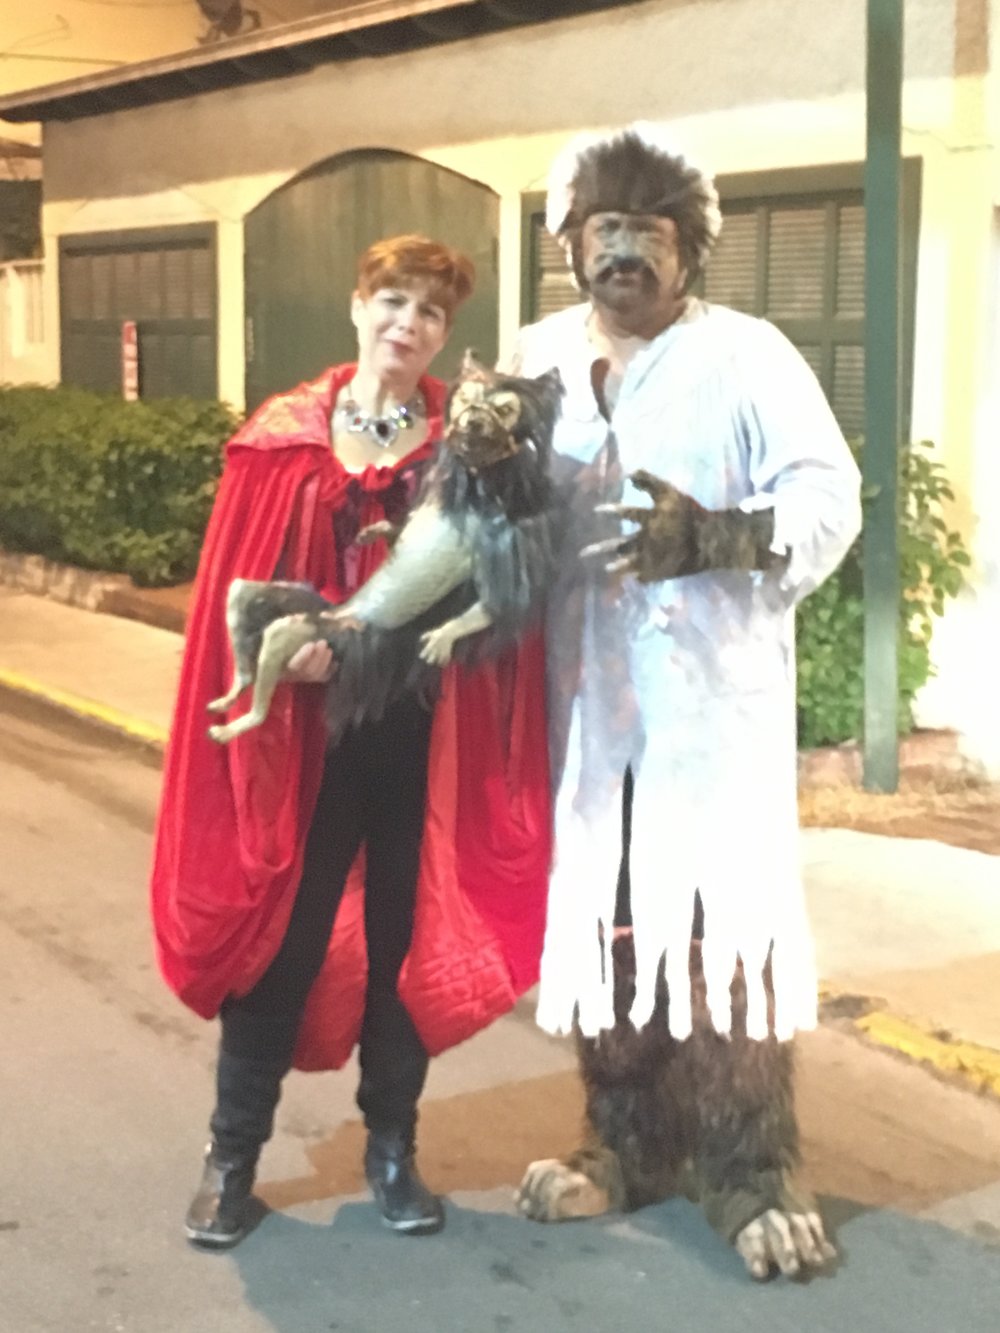  fantasy fest 2016 key west crowd shots pictures costumes demon dog evil 